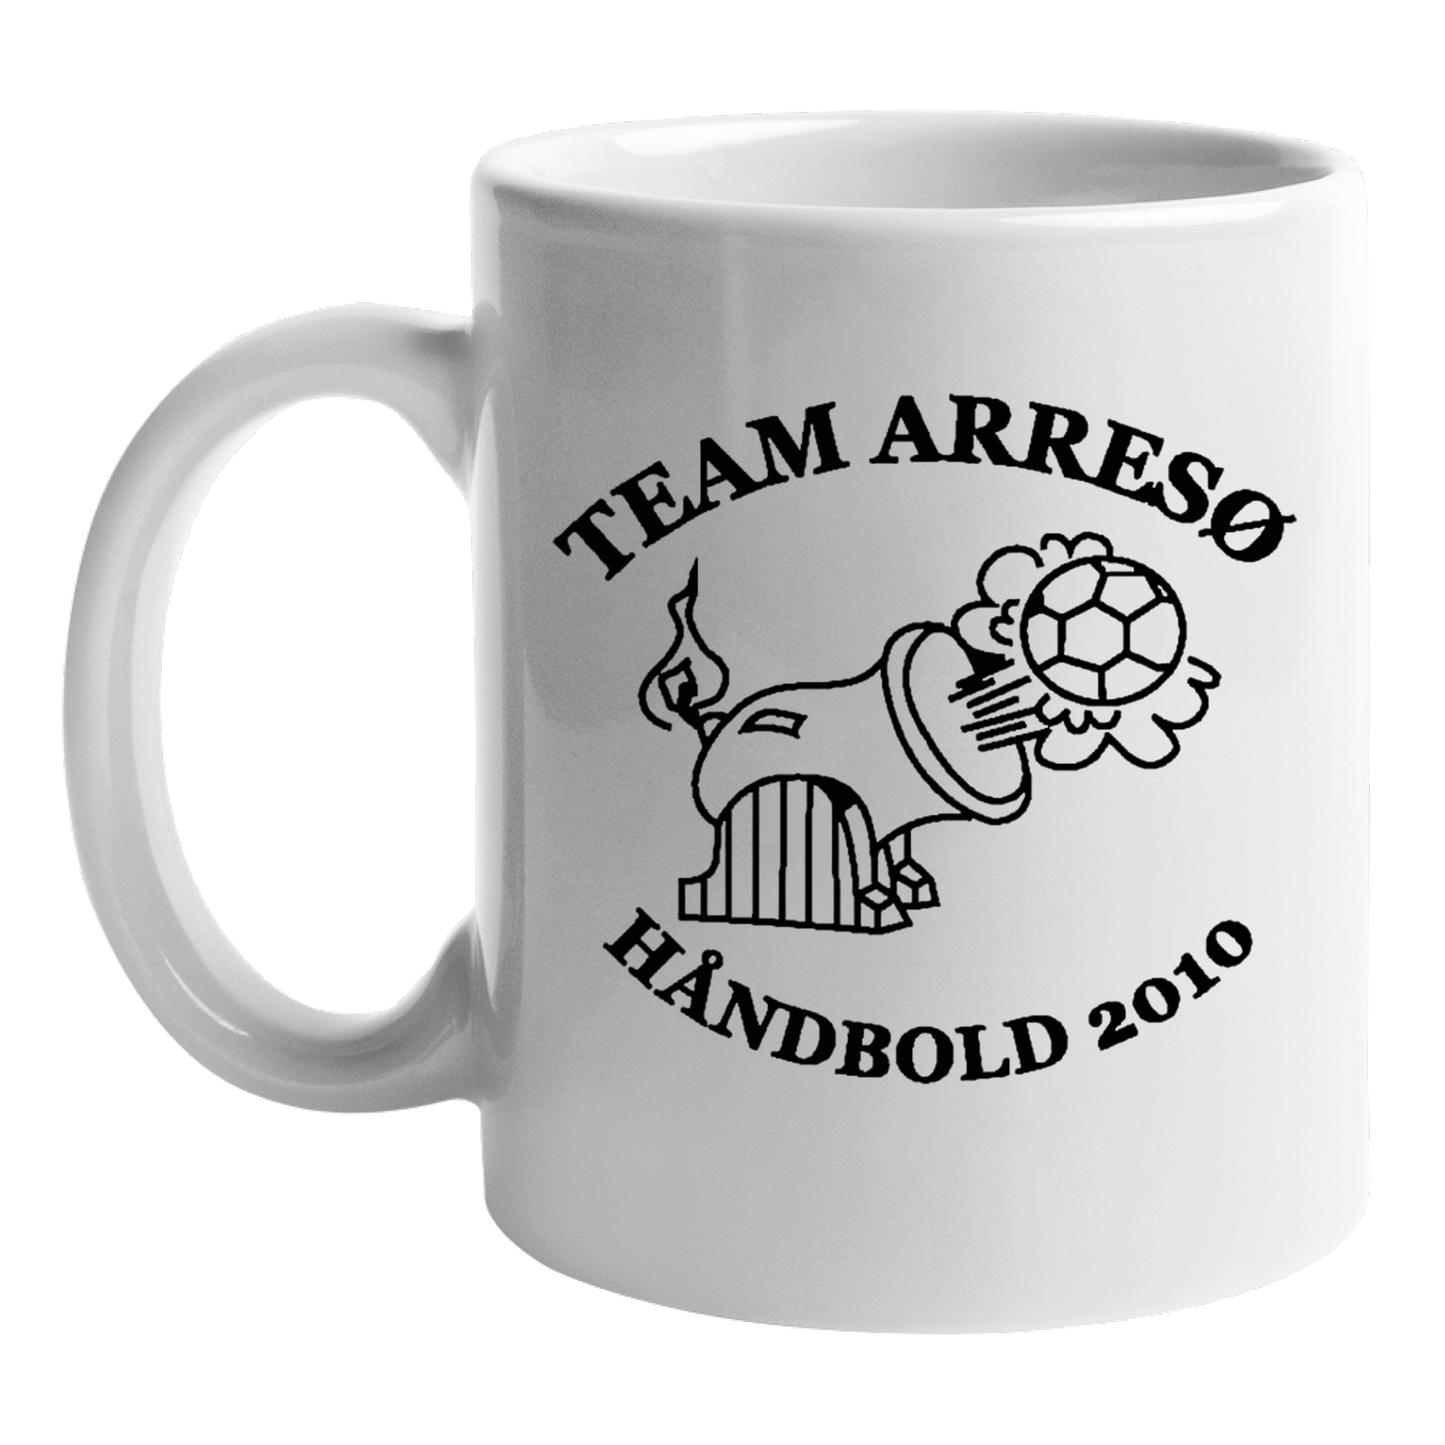 Kop med klub logo - Arresø